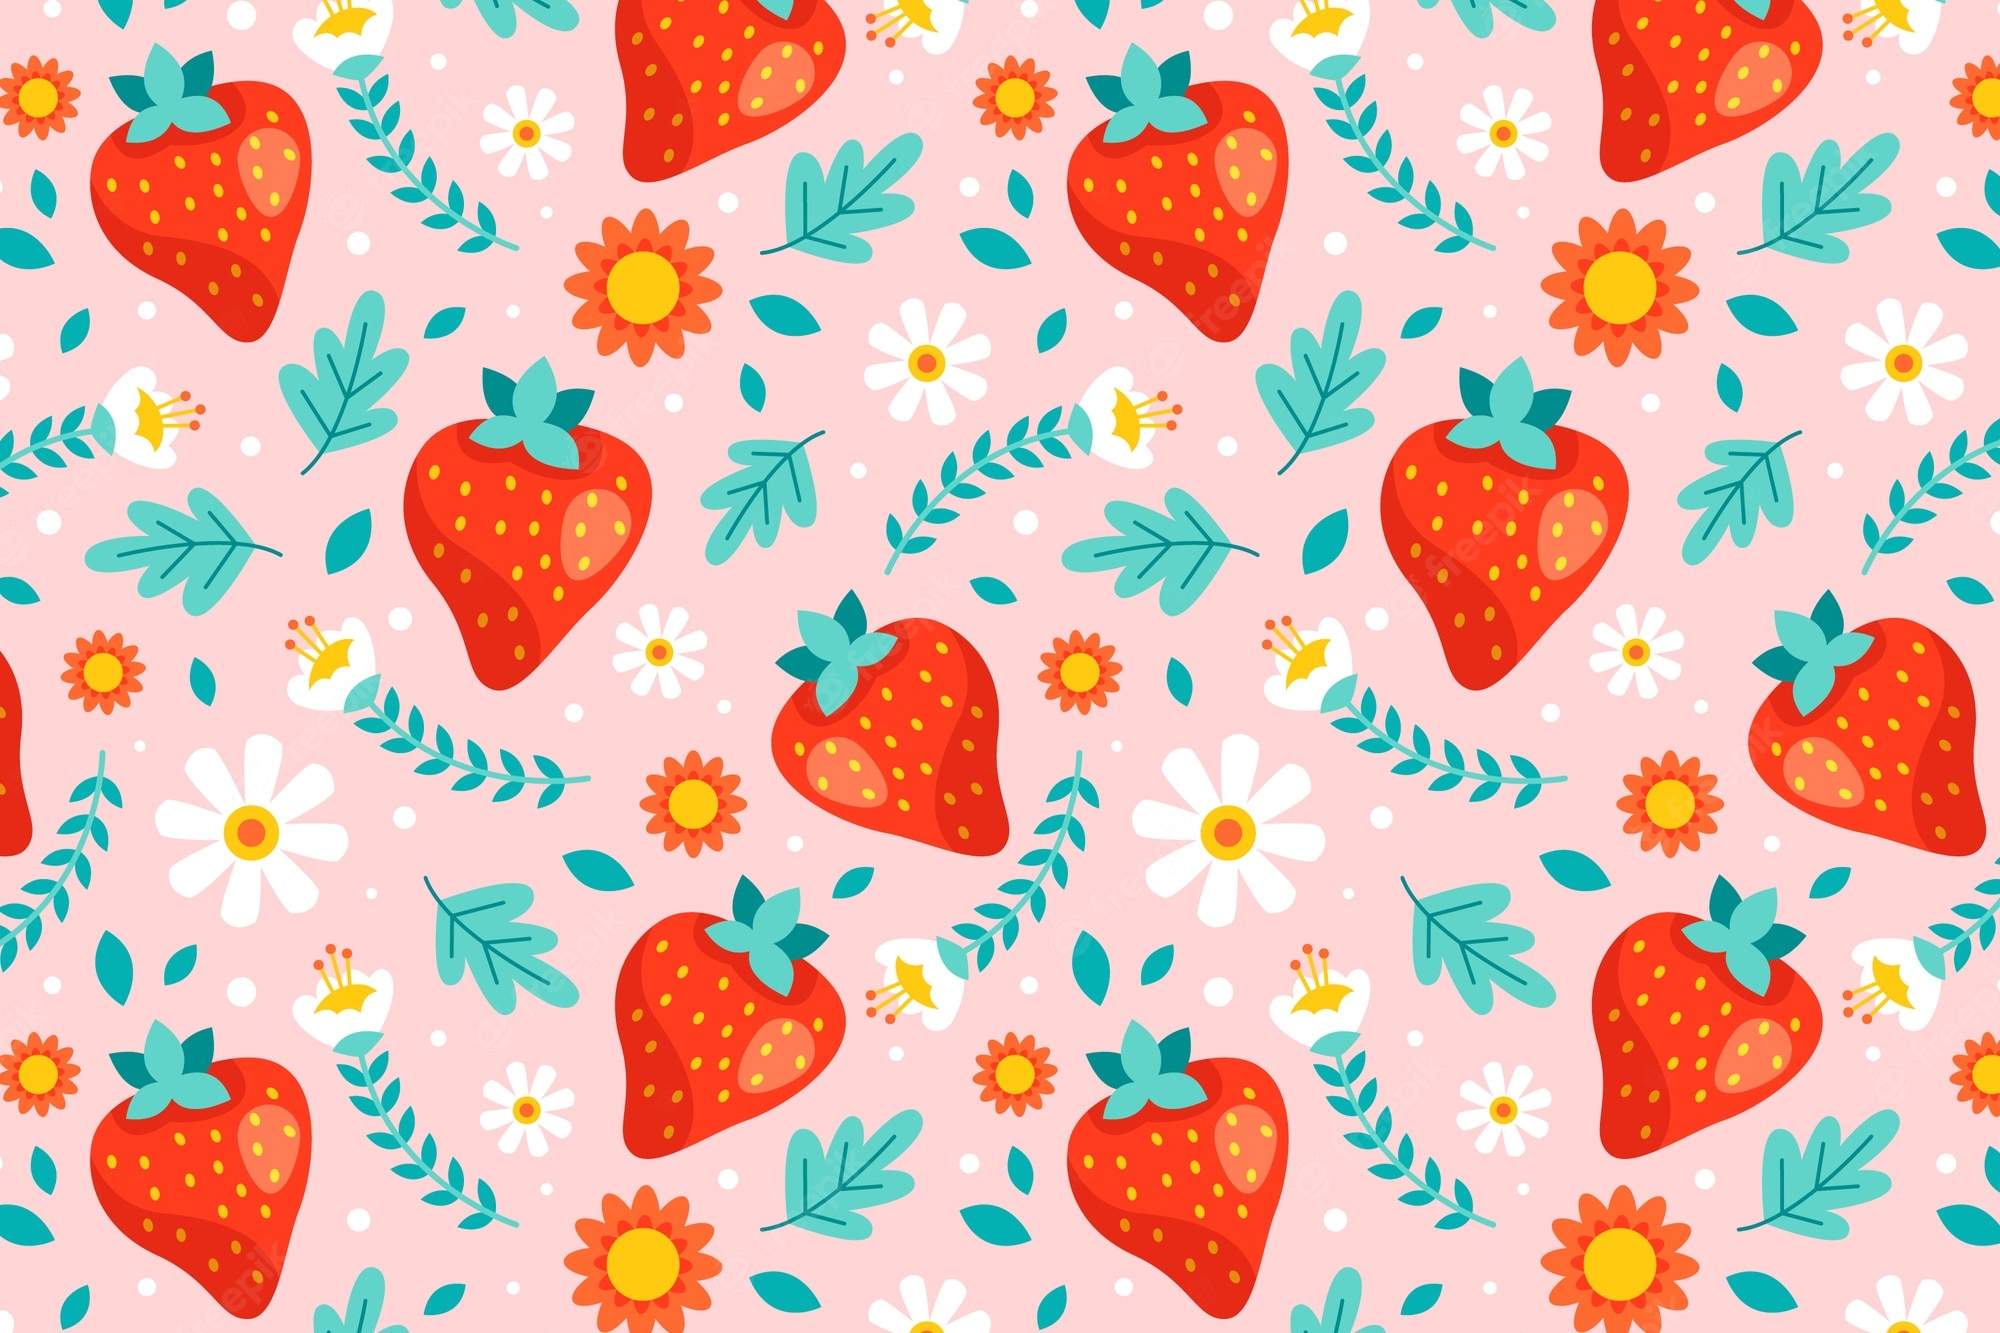 Cute Strawberry DesktopWallpapers